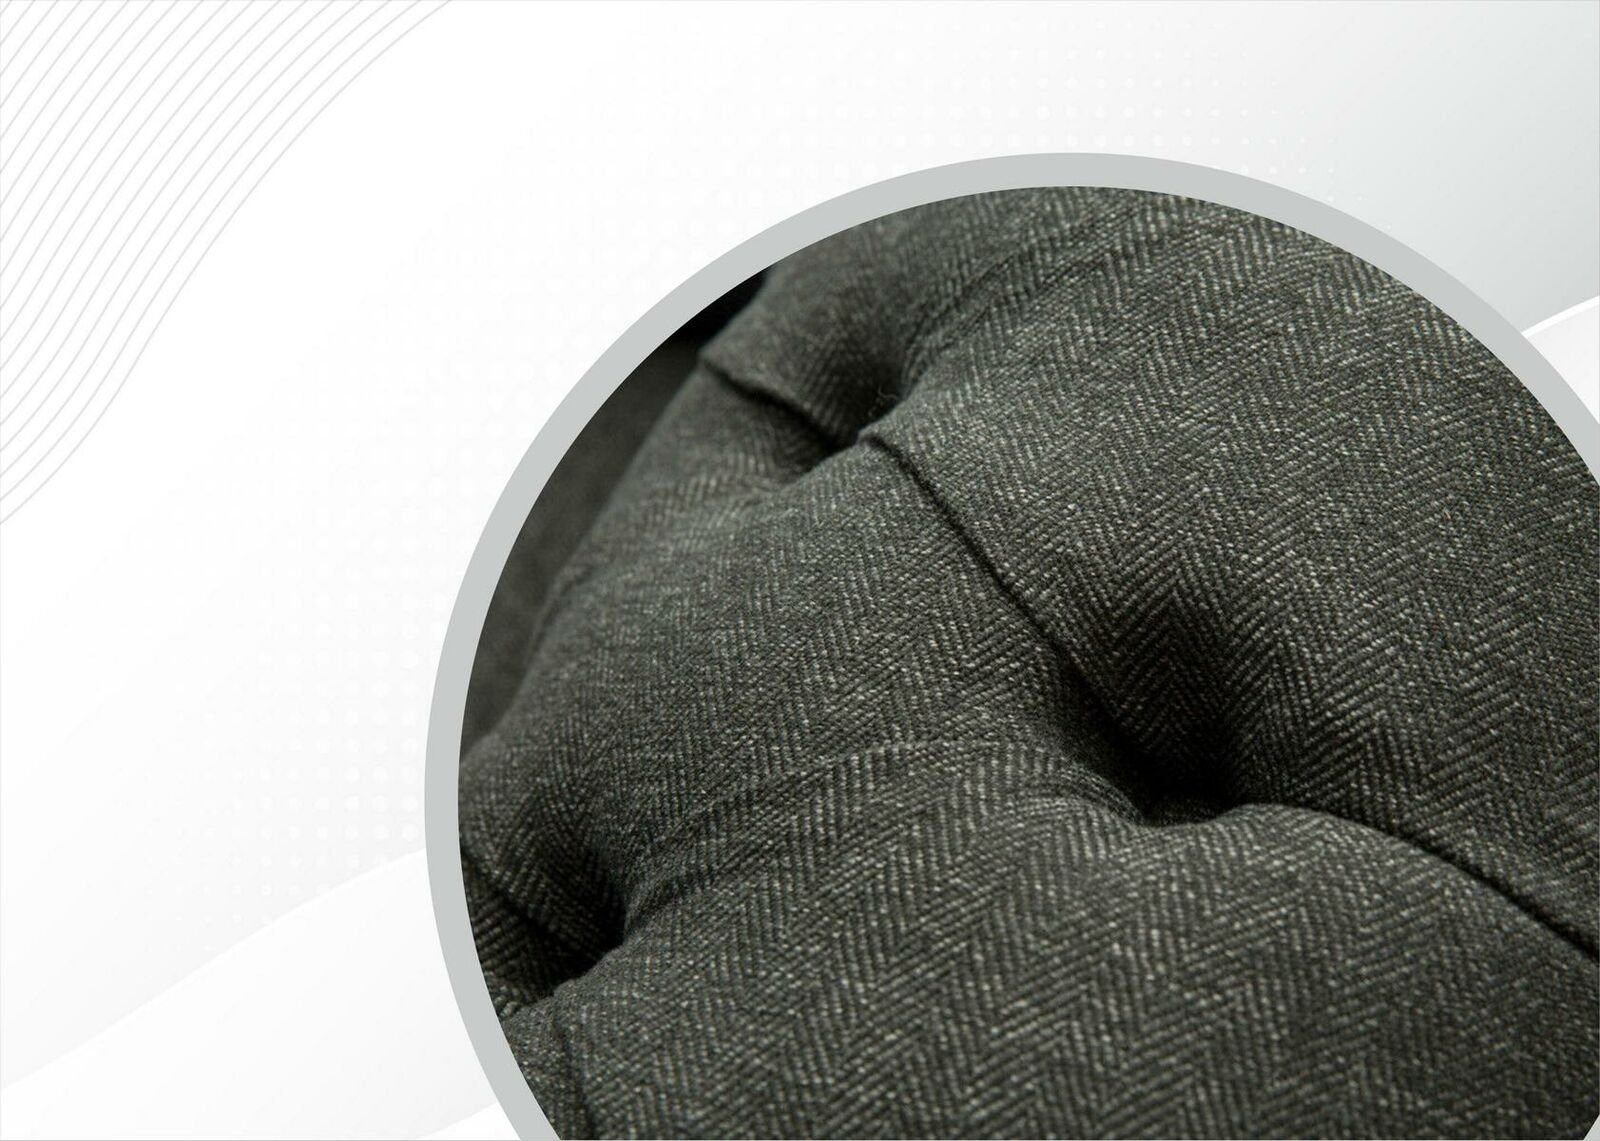 JVmoebel Chesterfield-Sofa, Chesterfield Dreisitzer Sofa Couch Design Moderne Grau Sofas Couchen